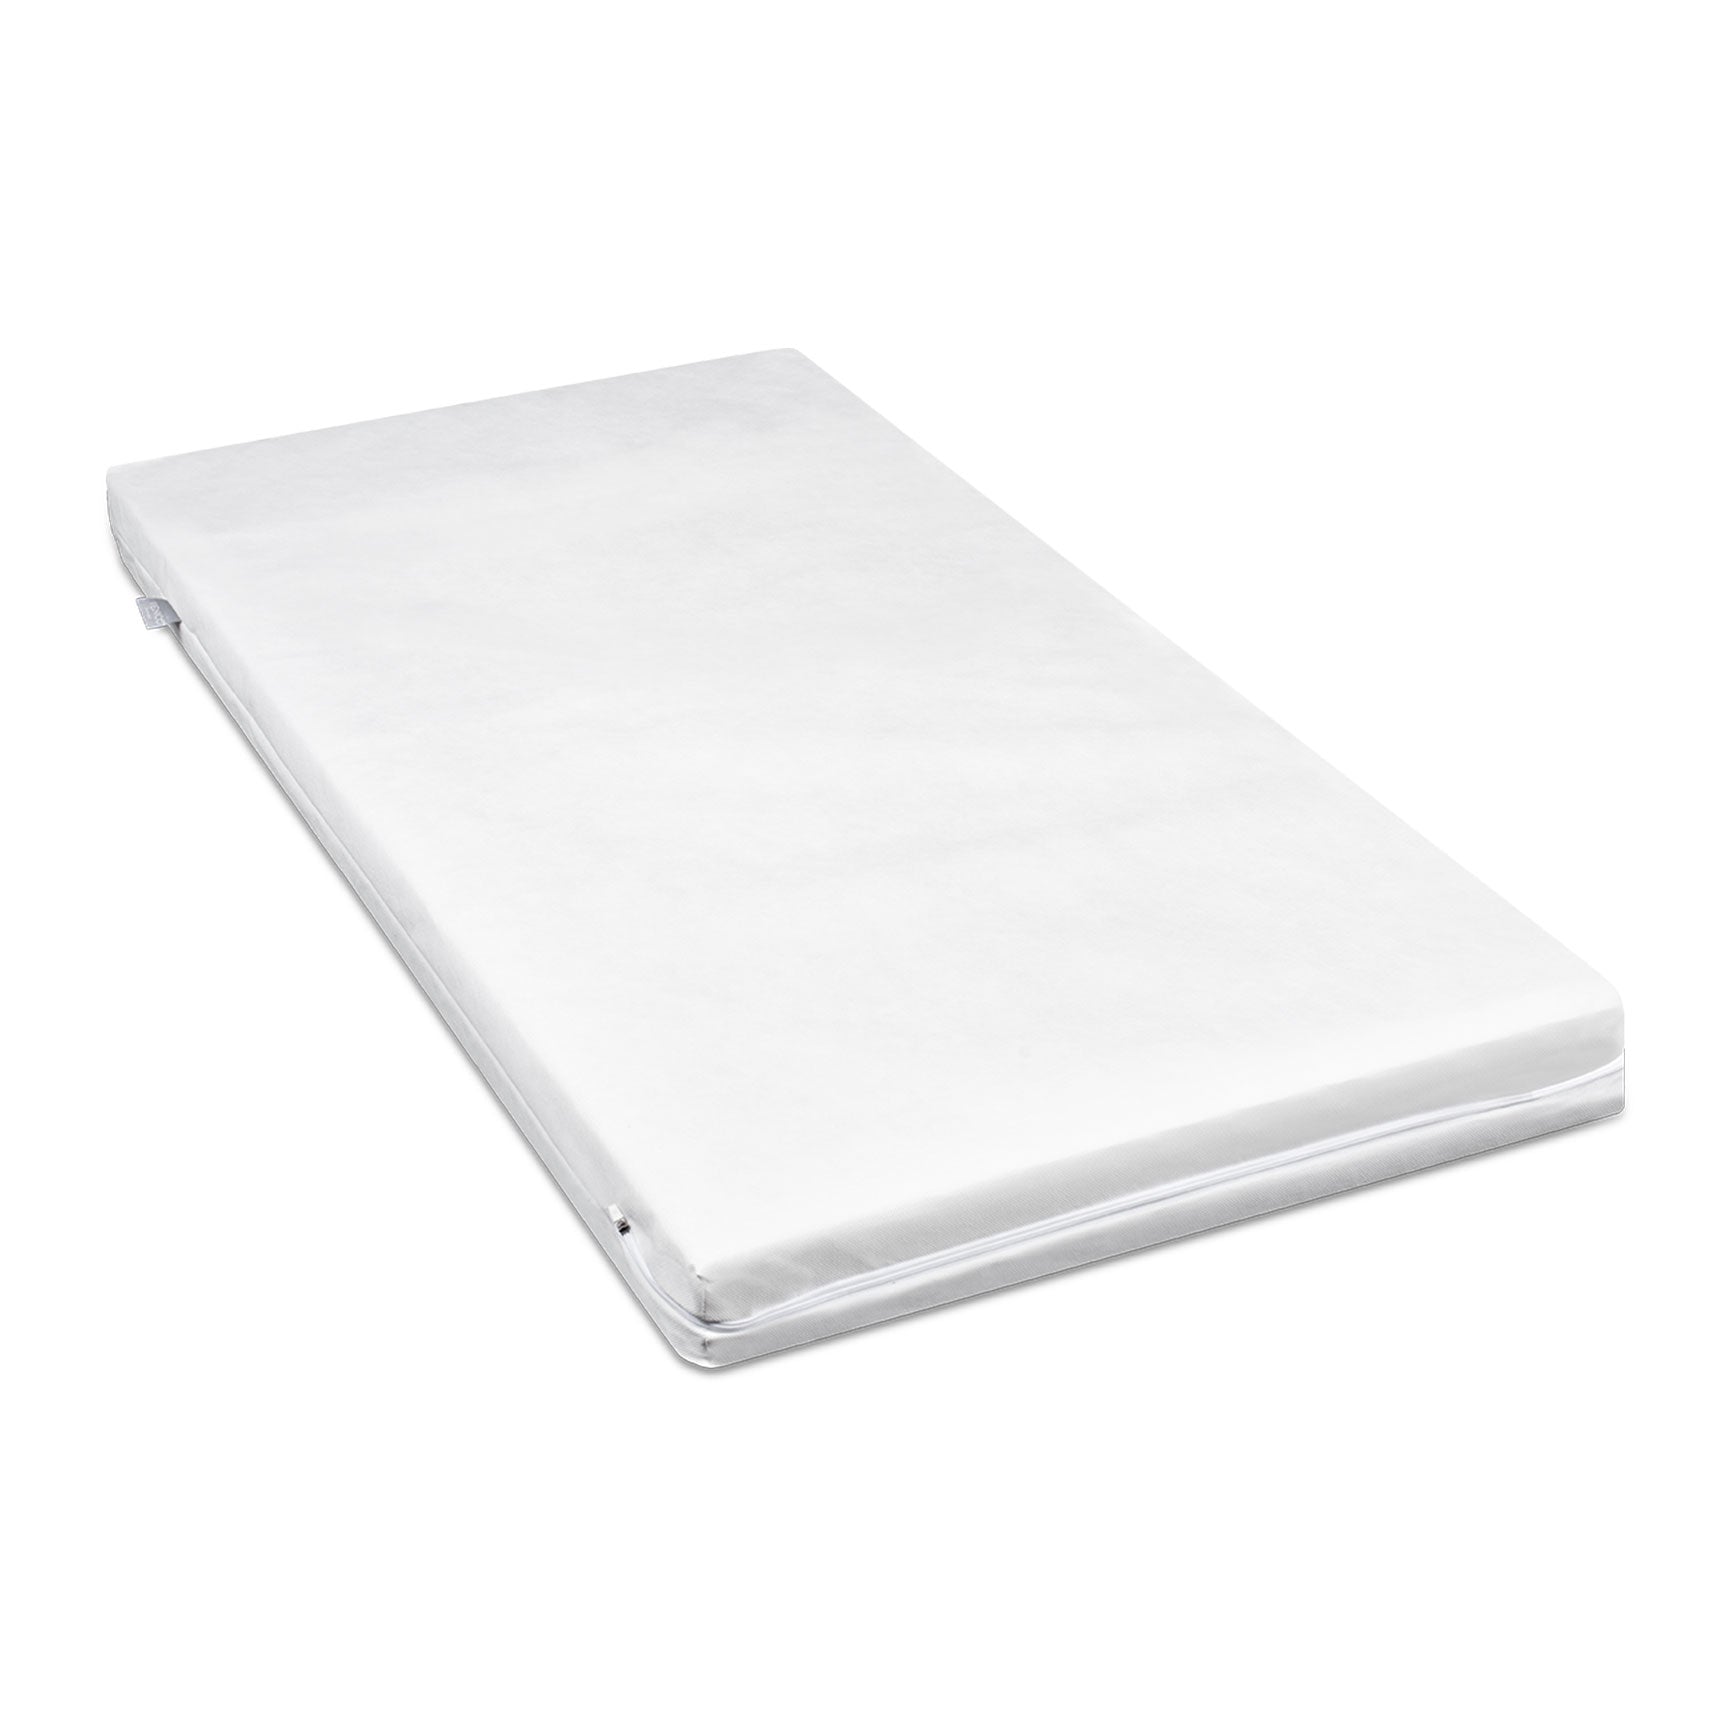 Venicci Cot Beds Venicci Forenzo Nordic White Oak Cot Bed with Drawer in Nordic White 12605-NOR-WHT